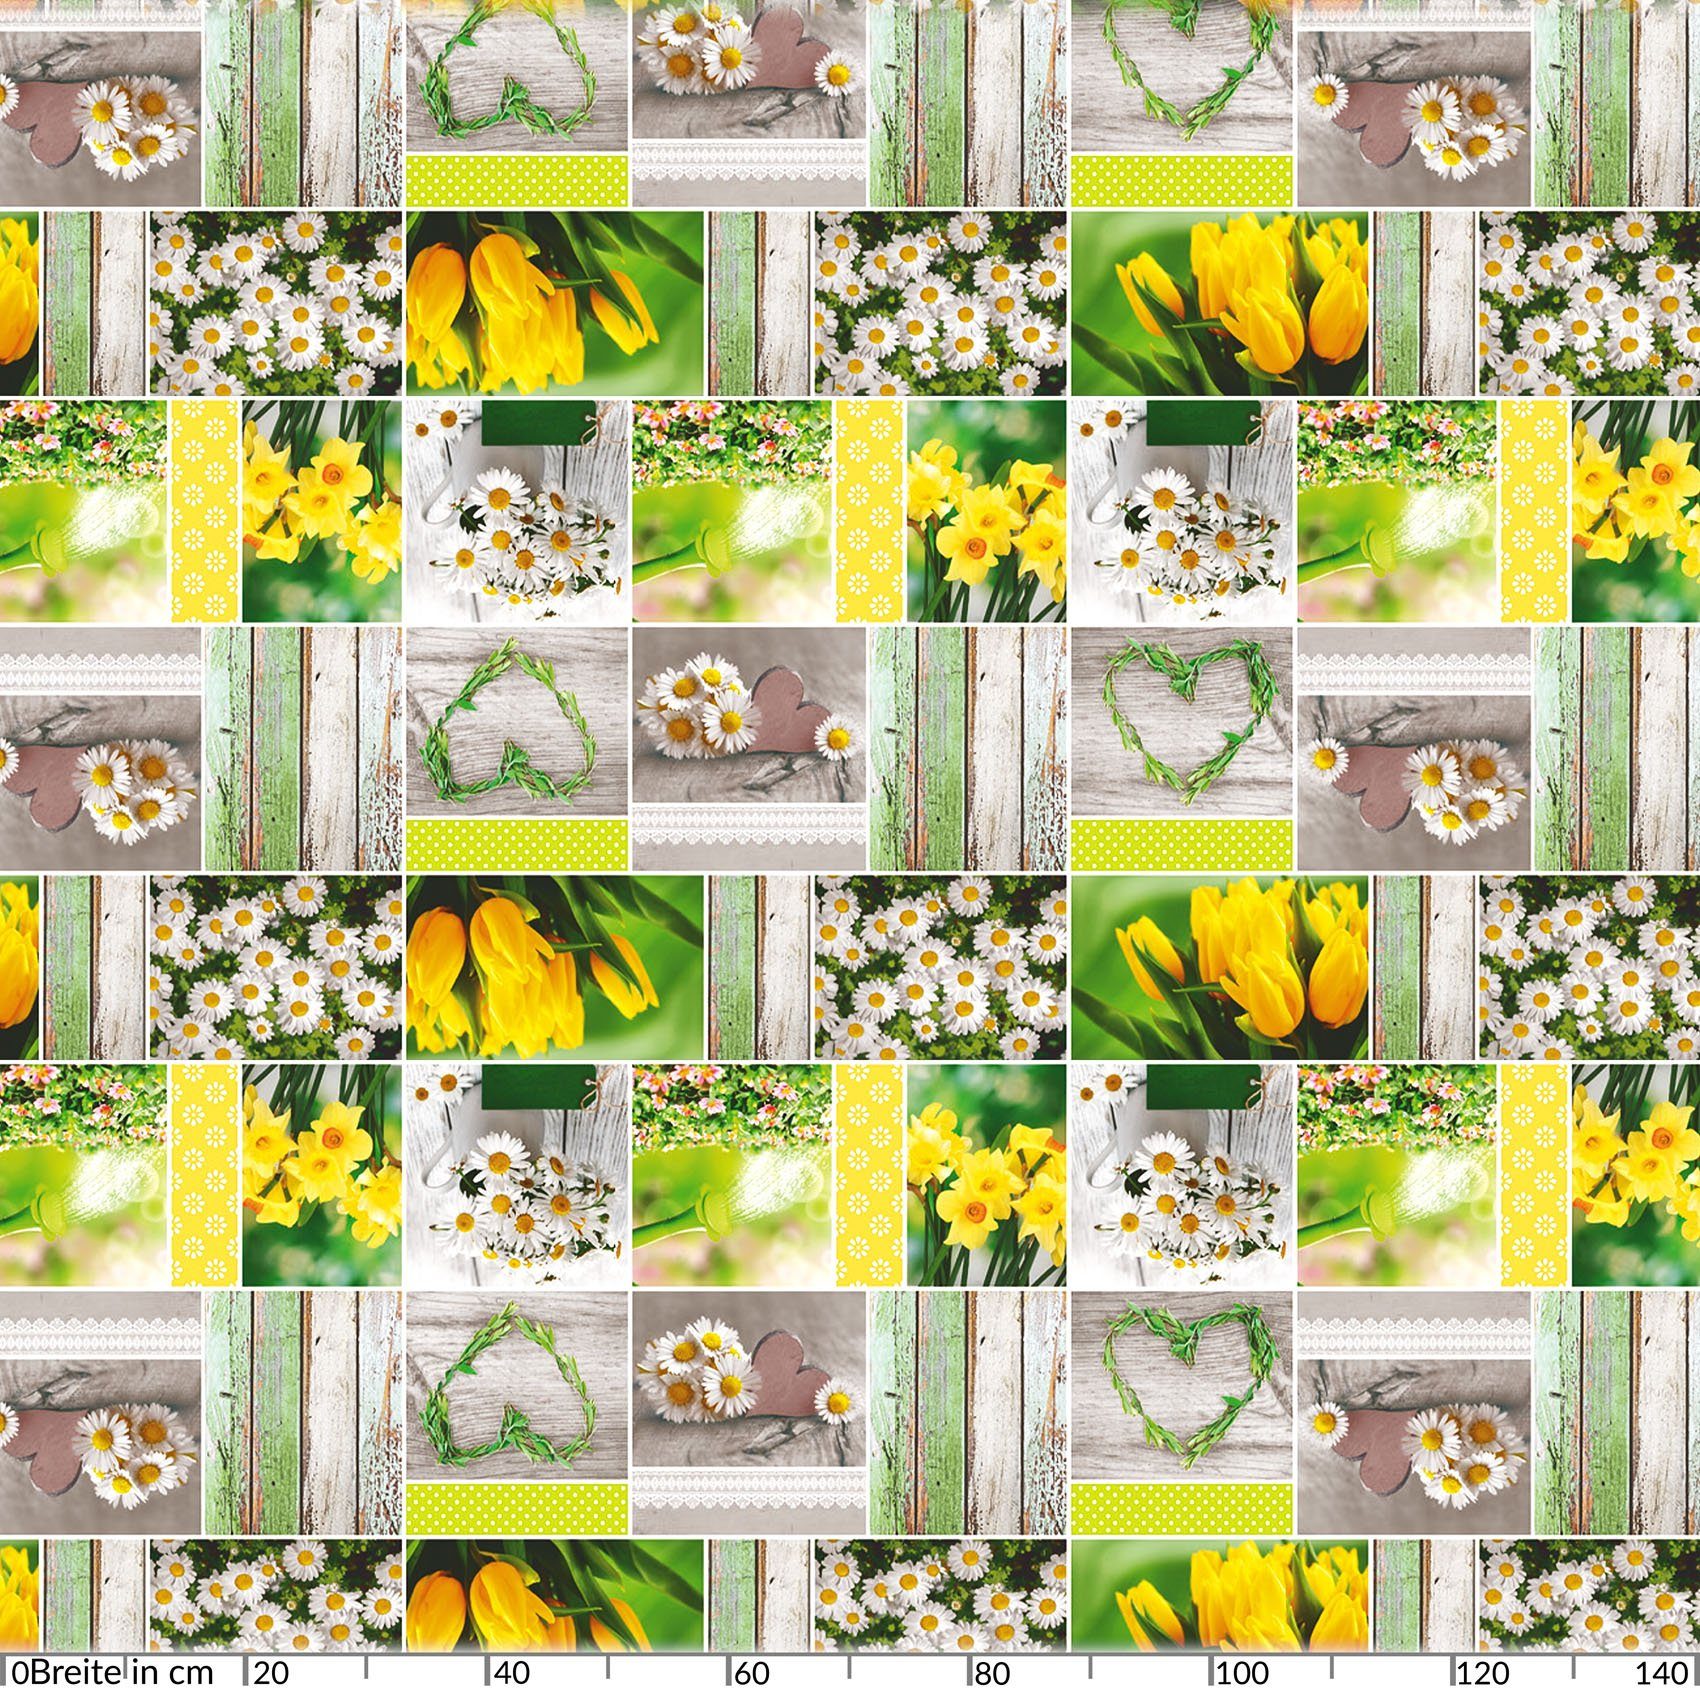 Wasserabweisend ANRO 140 Breite cm, Robust Grün Tischdecke Glatt Tischdecke Wachstuch Blumen